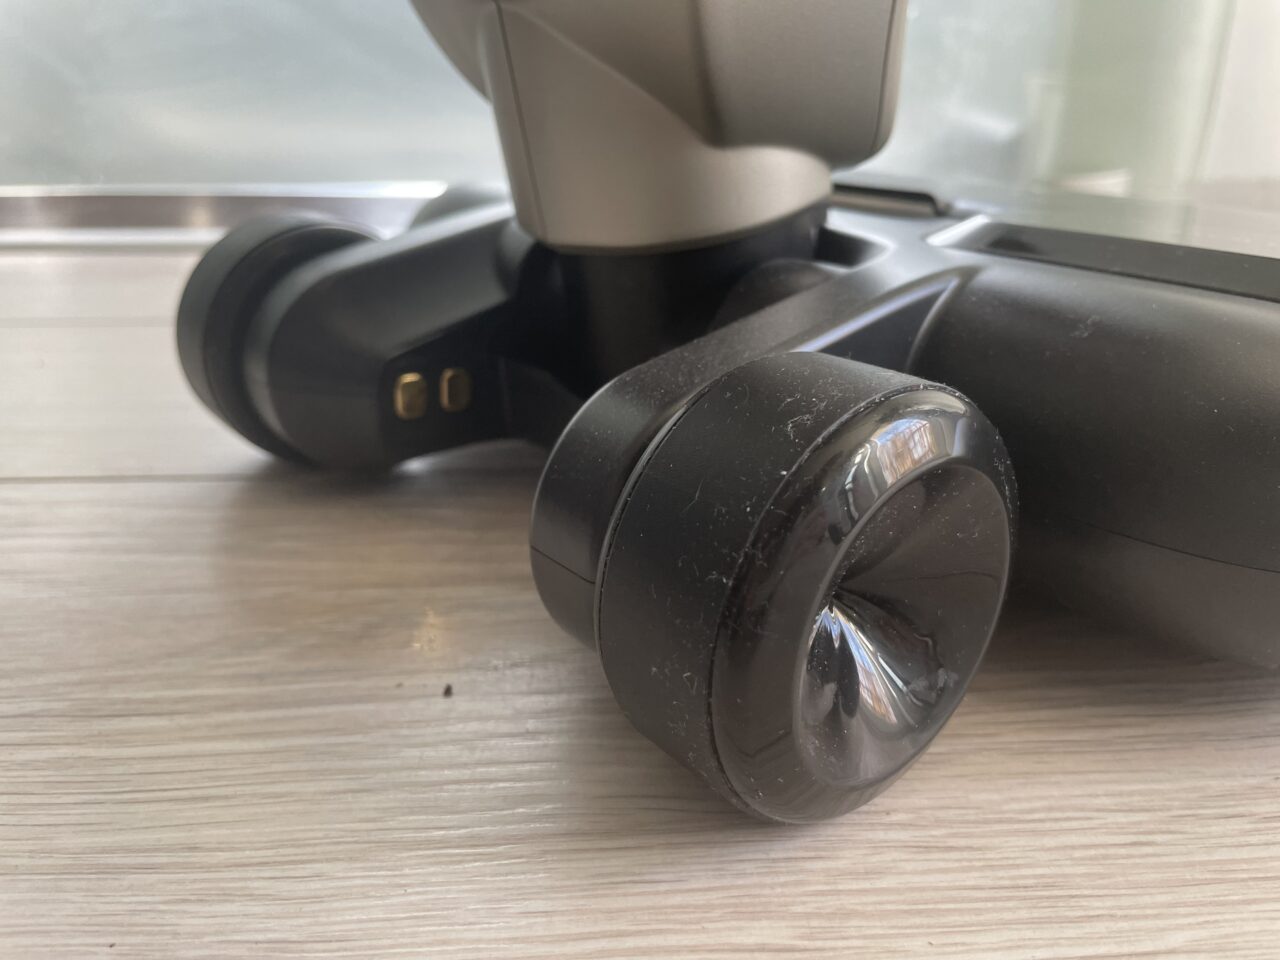 Czarny, przenośny głośnik Bluetooth leżący na drewnianym blacie, z widocznymi zakurzonymi kółkami i złączami do ładowania.